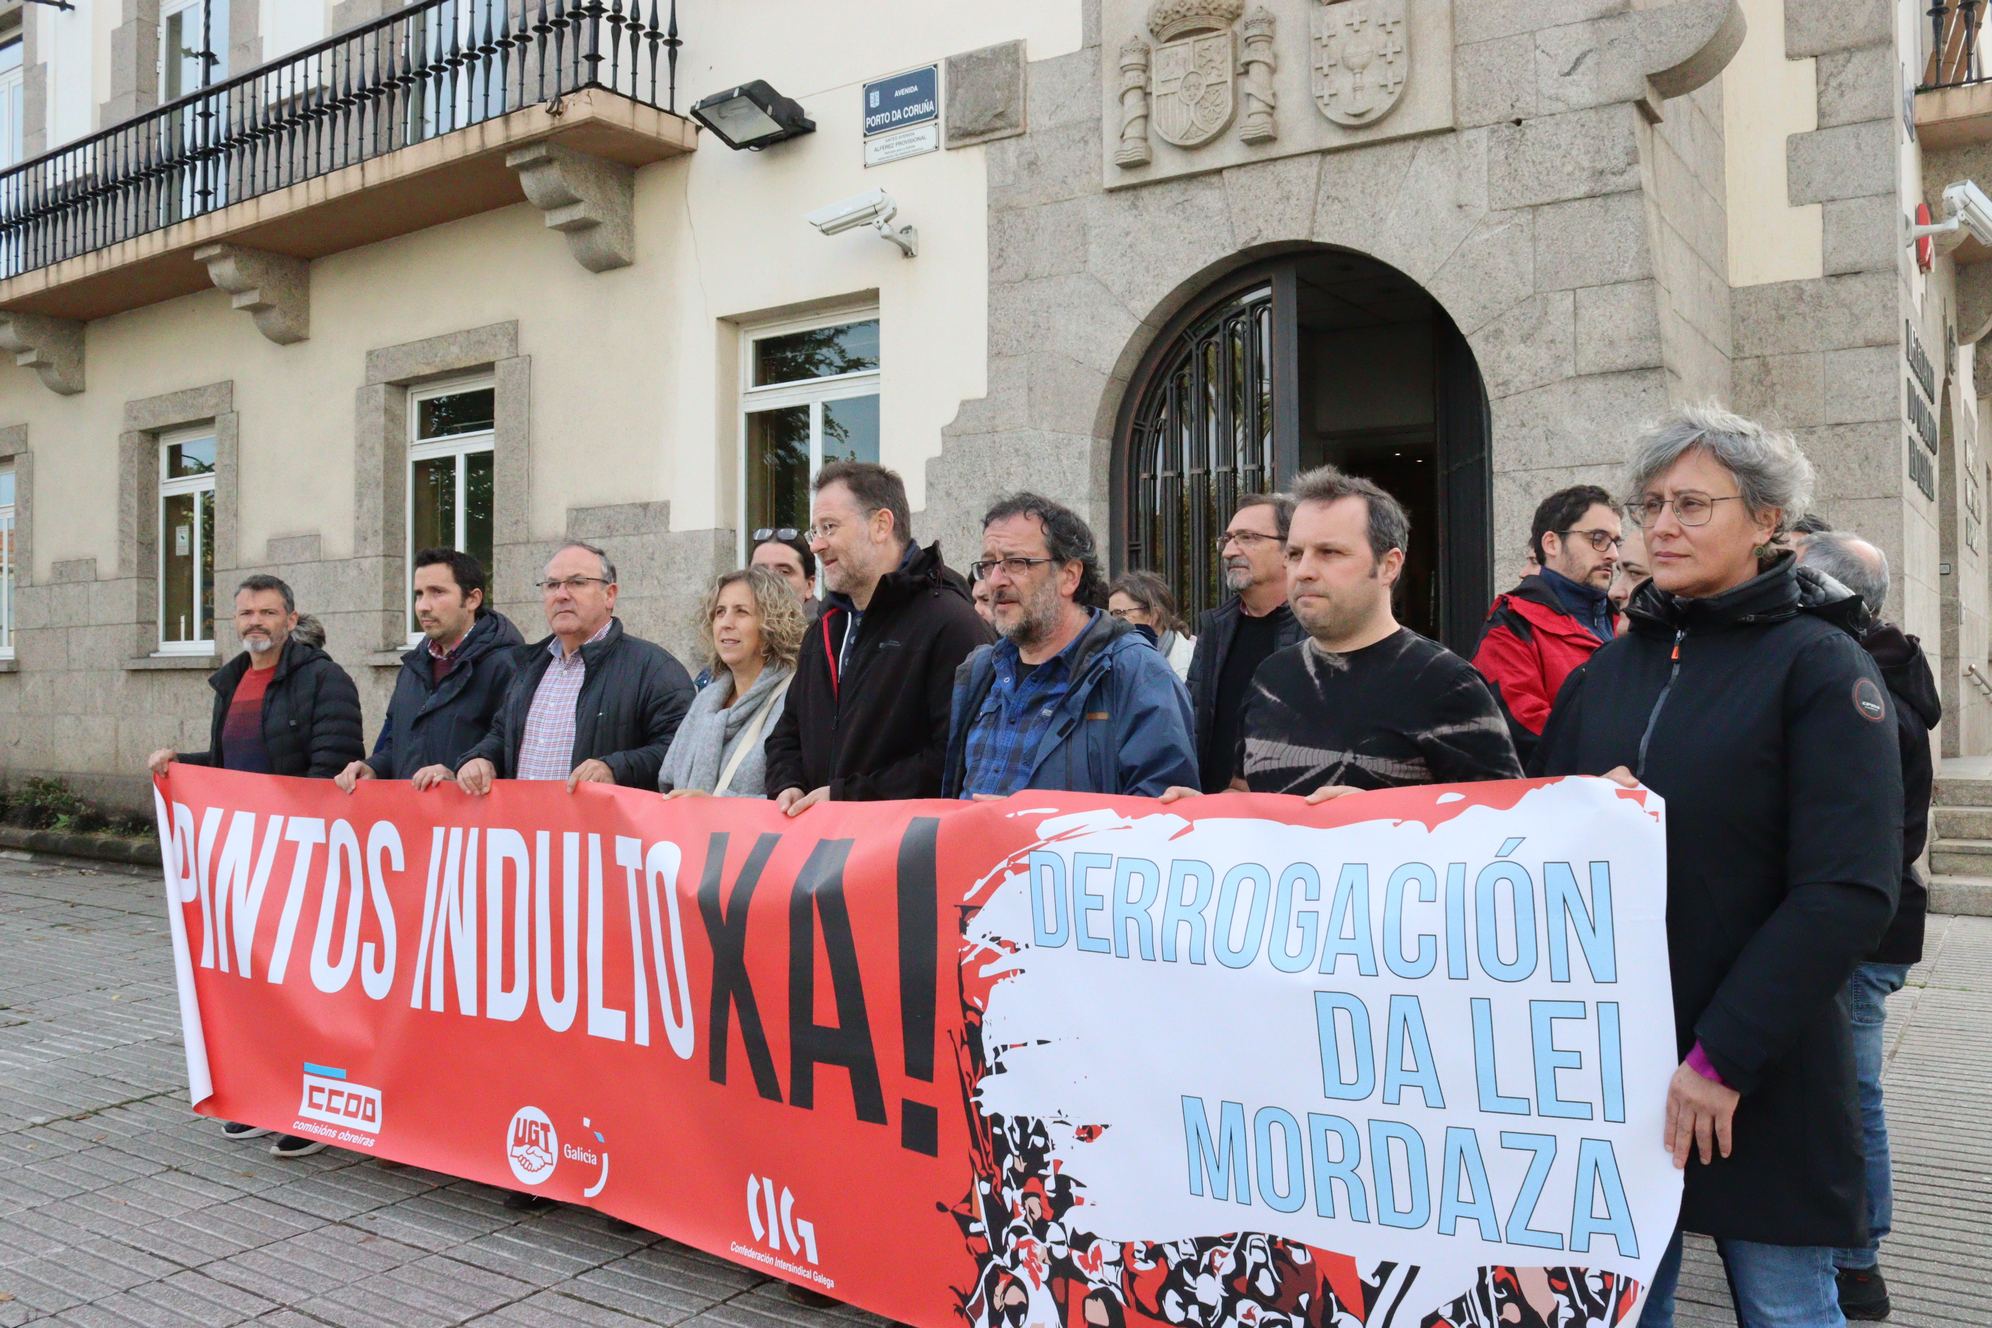 Máis de 5500 sinaturas acompañan a solicitude de indulto para o compañeiro Pintos - CIG: Confederación Intersindical Galega